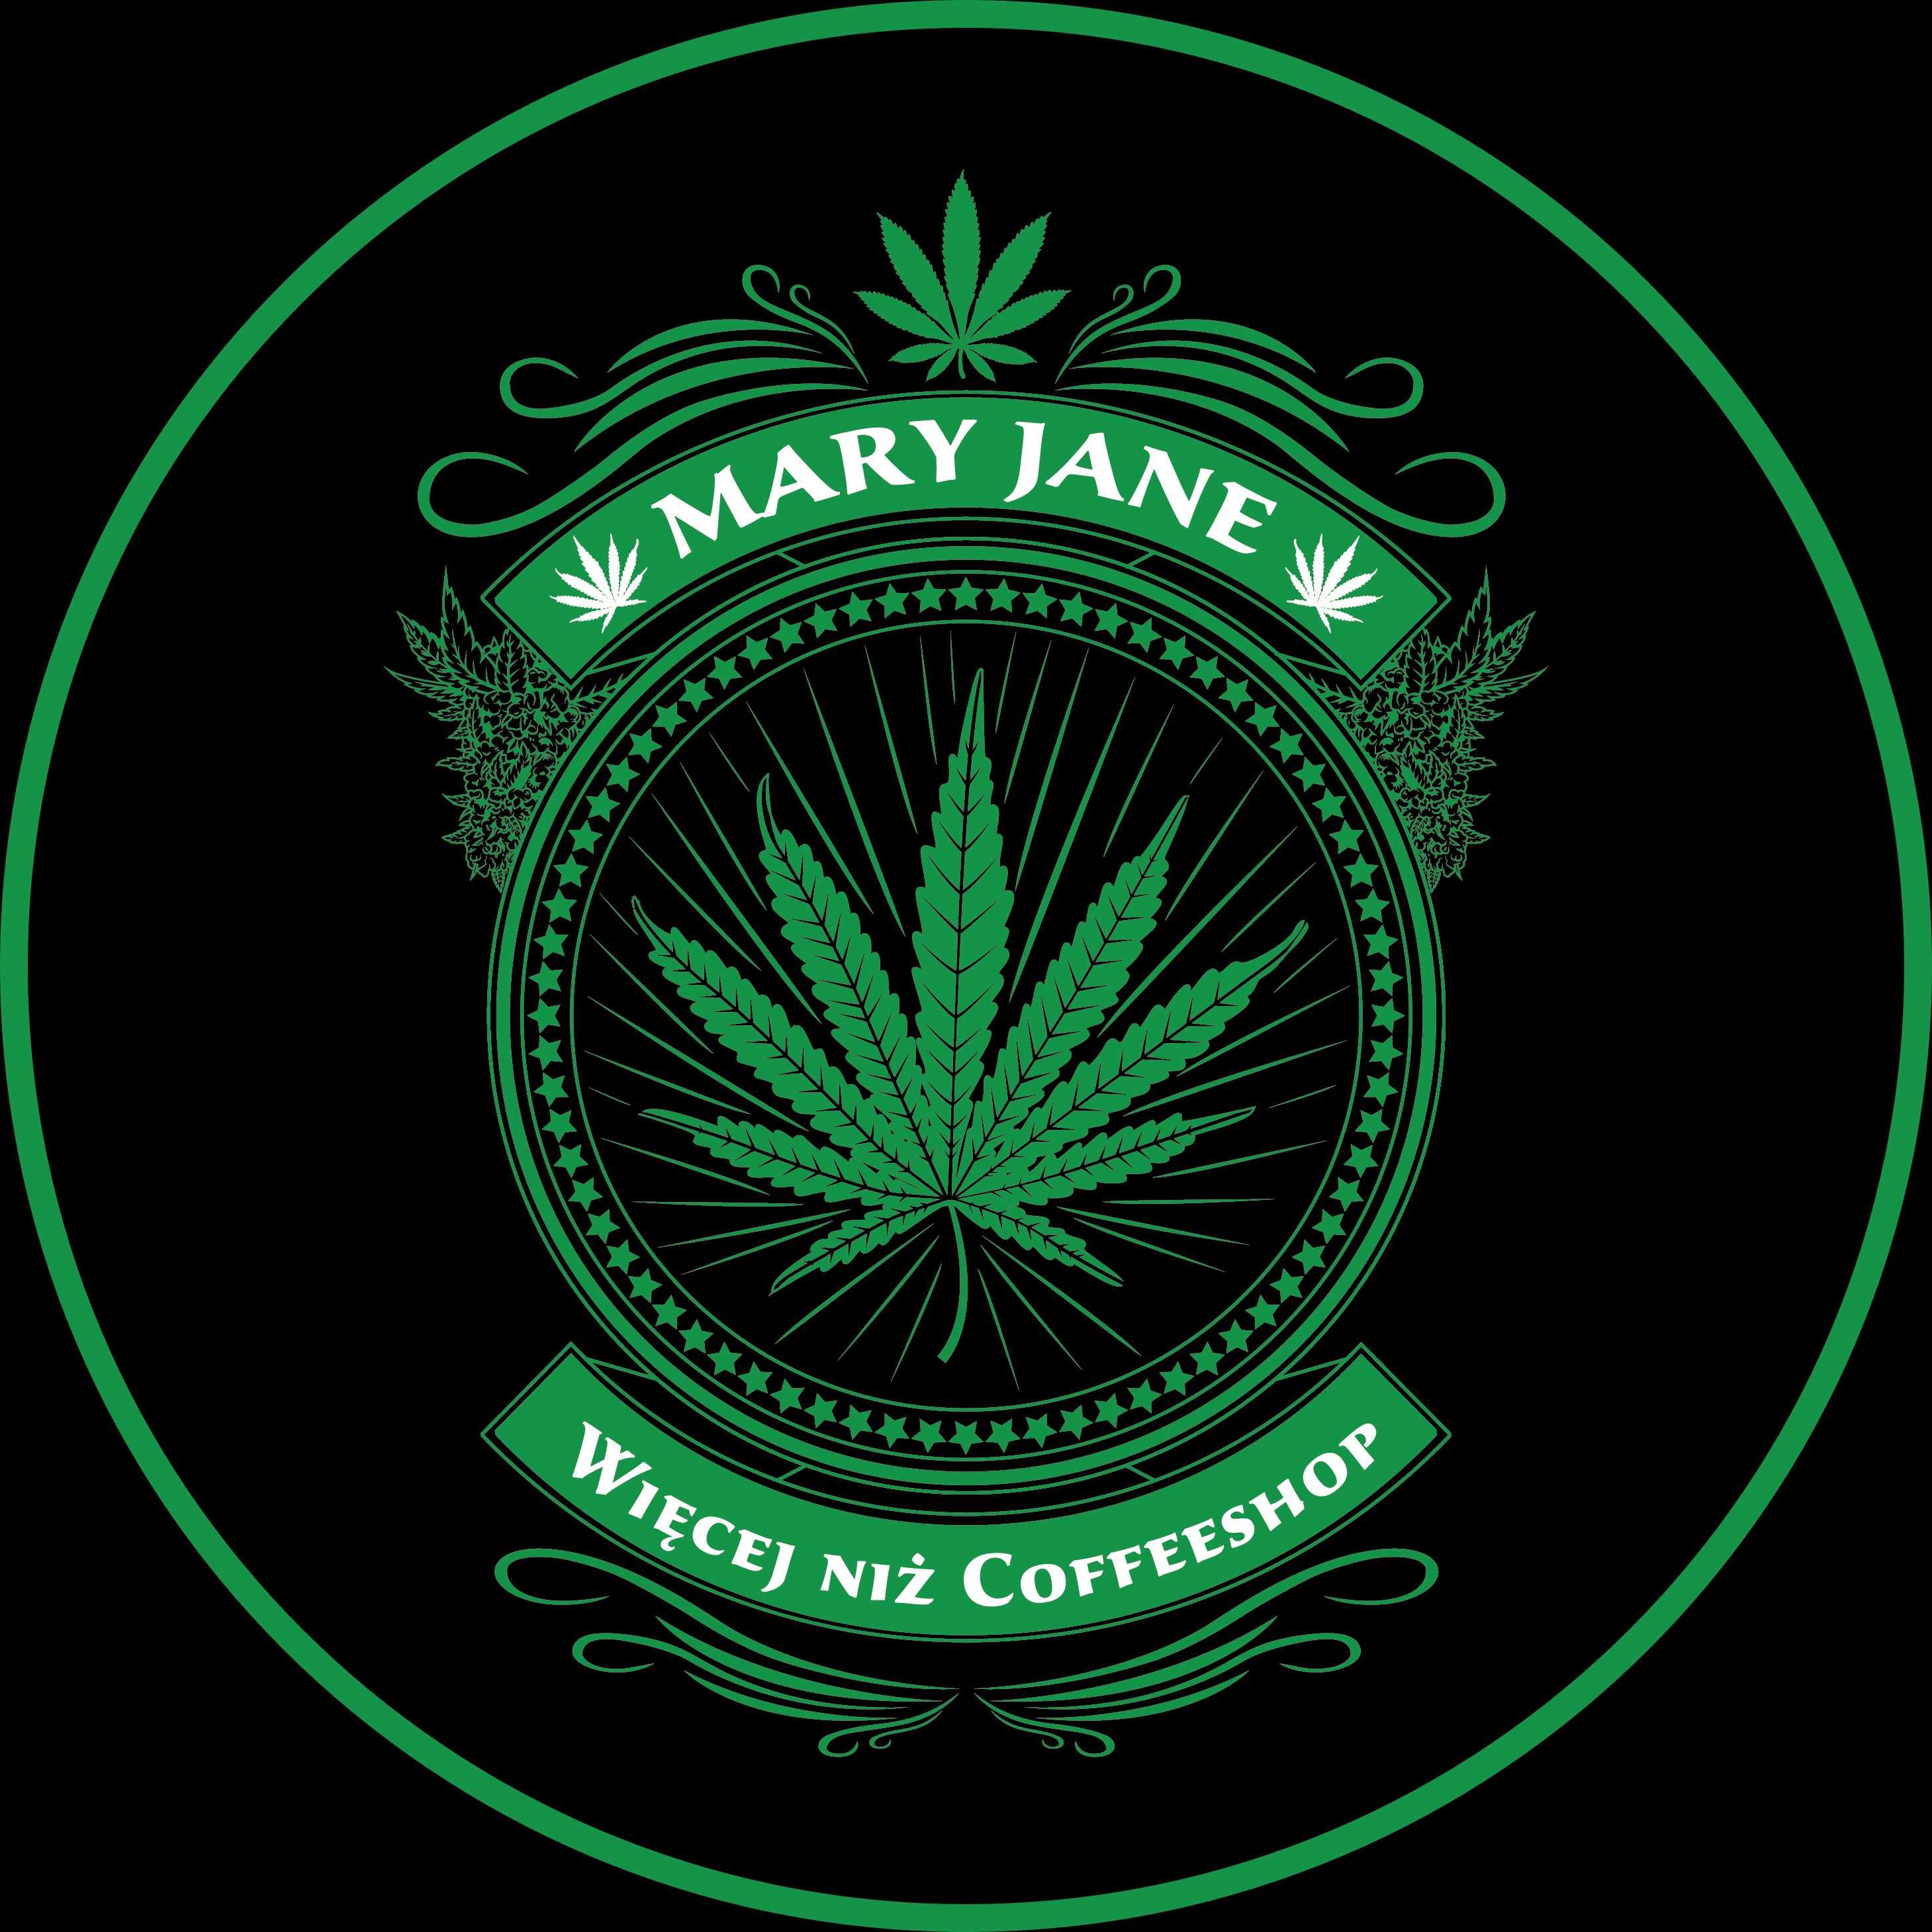 Sklep Mary Jane | White Widow do 39% CBD - Legalny Susz Konopny 1 gram